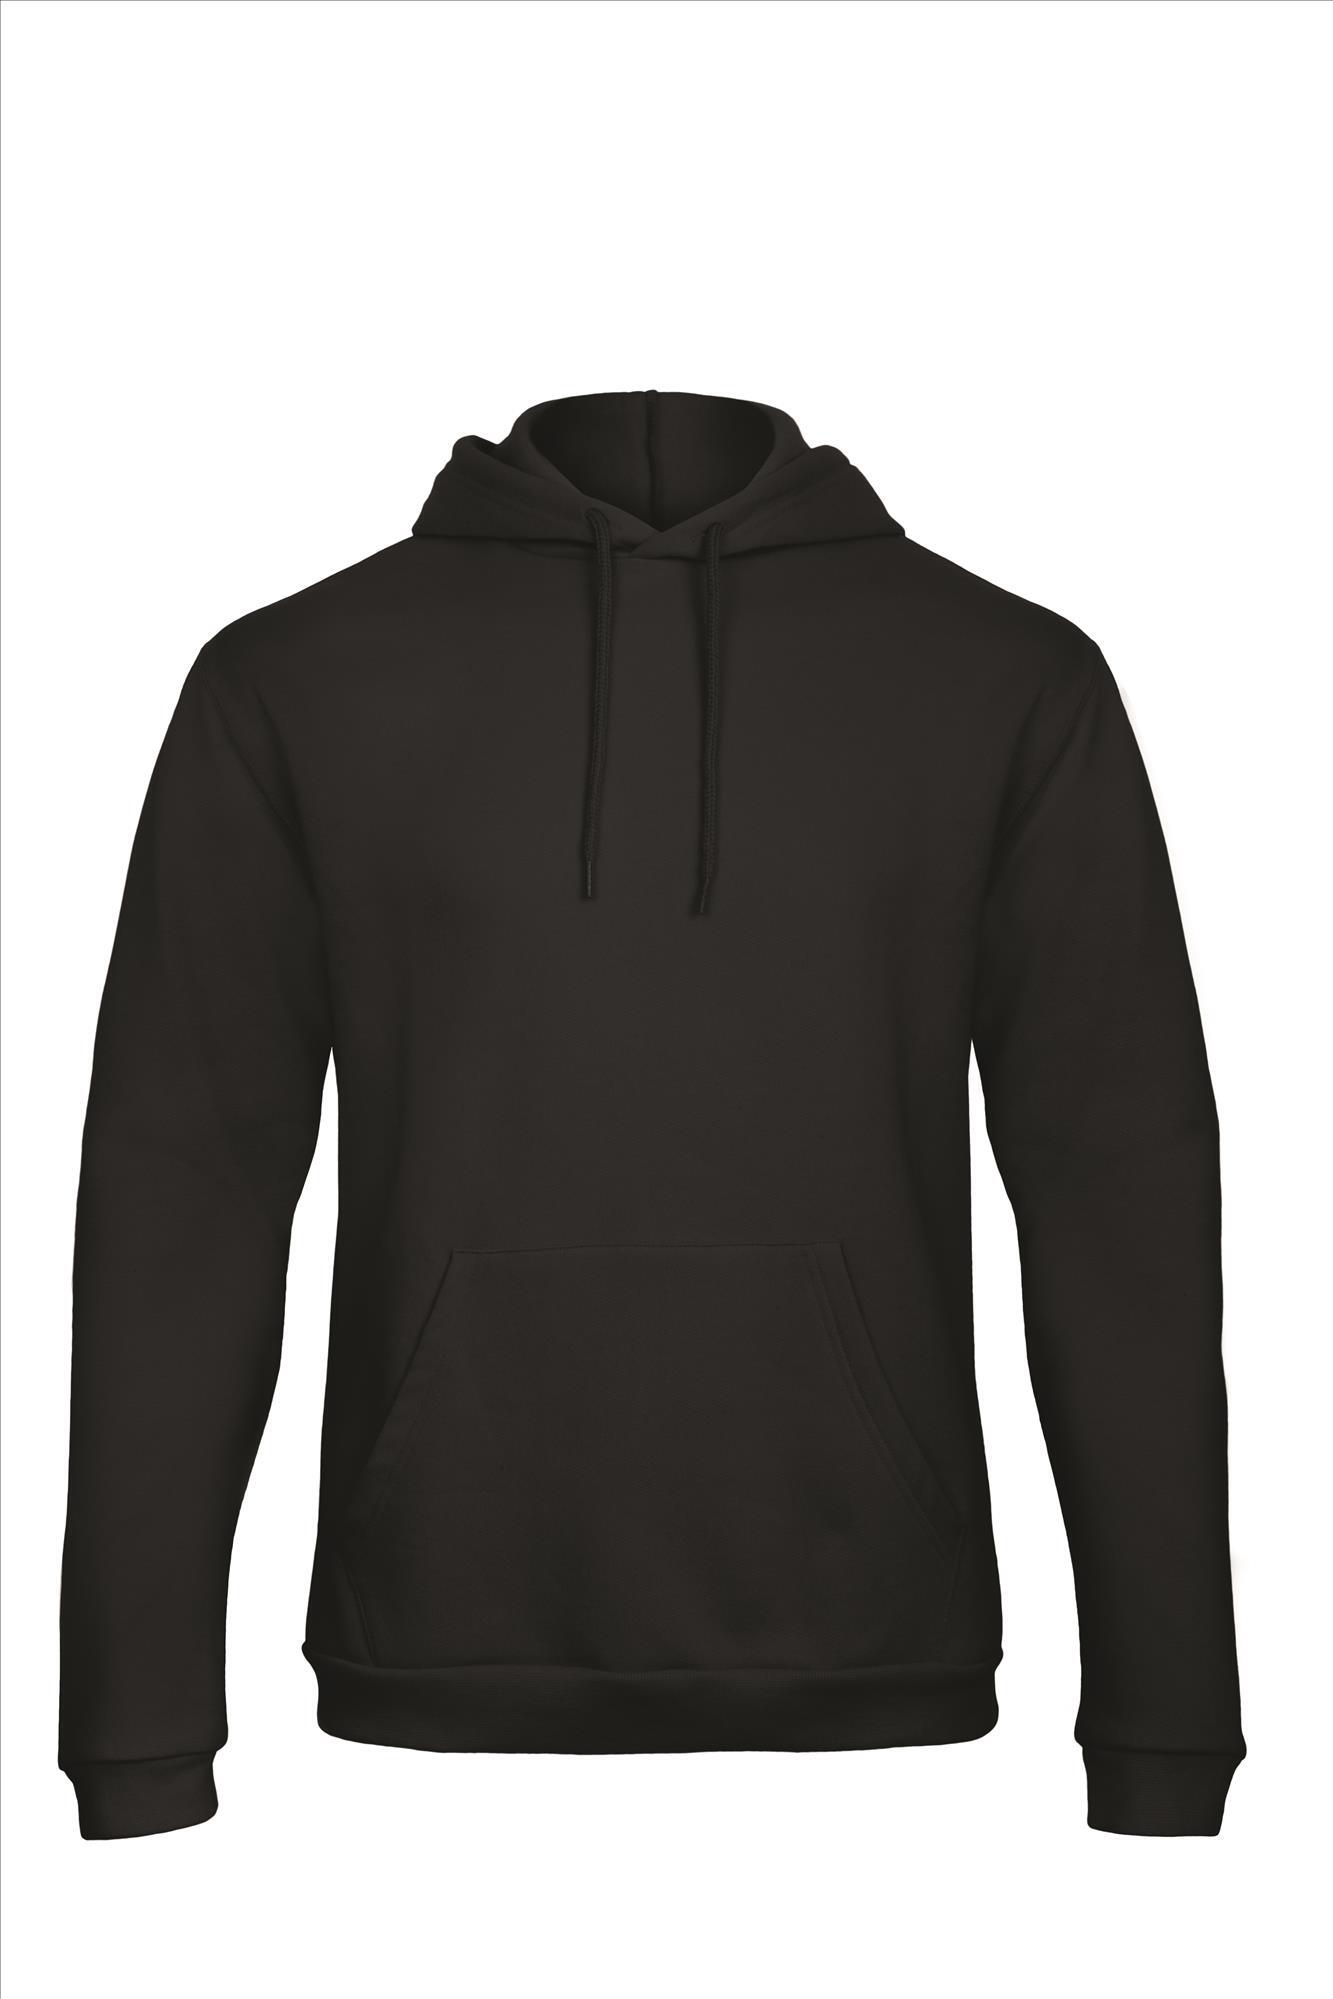 Zwarte hoodie Sweatshirt Unisex met capuchon heren bedrukbaar